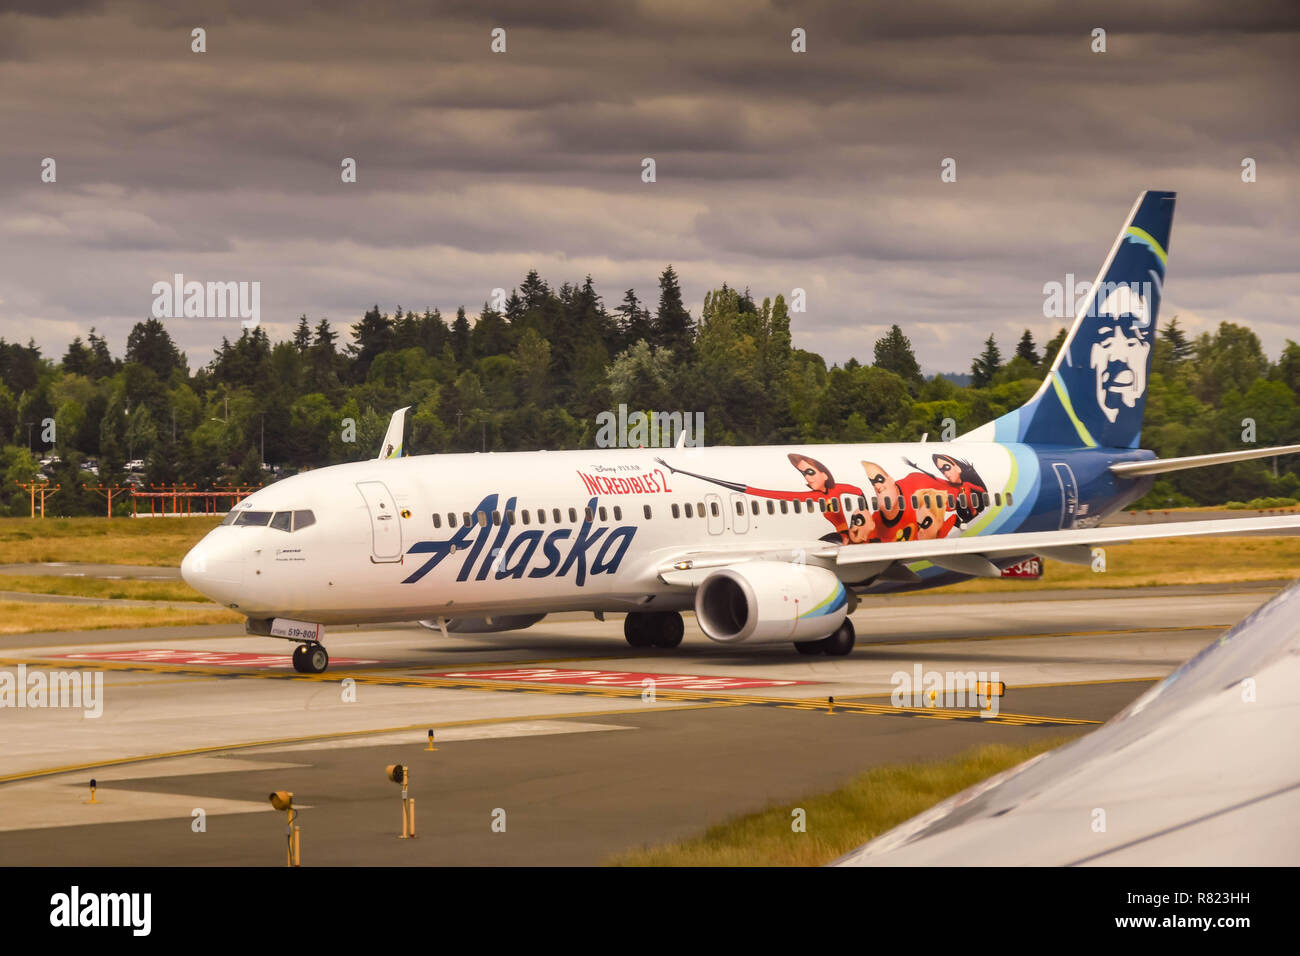 SEATTLE, WA, USA - JUNI 2019: Alaska Airlines Boeing 737 Rollen zum Abheben. Das Flugzeug trägt eine 'Incredibles 2'-Lackierung Stockfoto